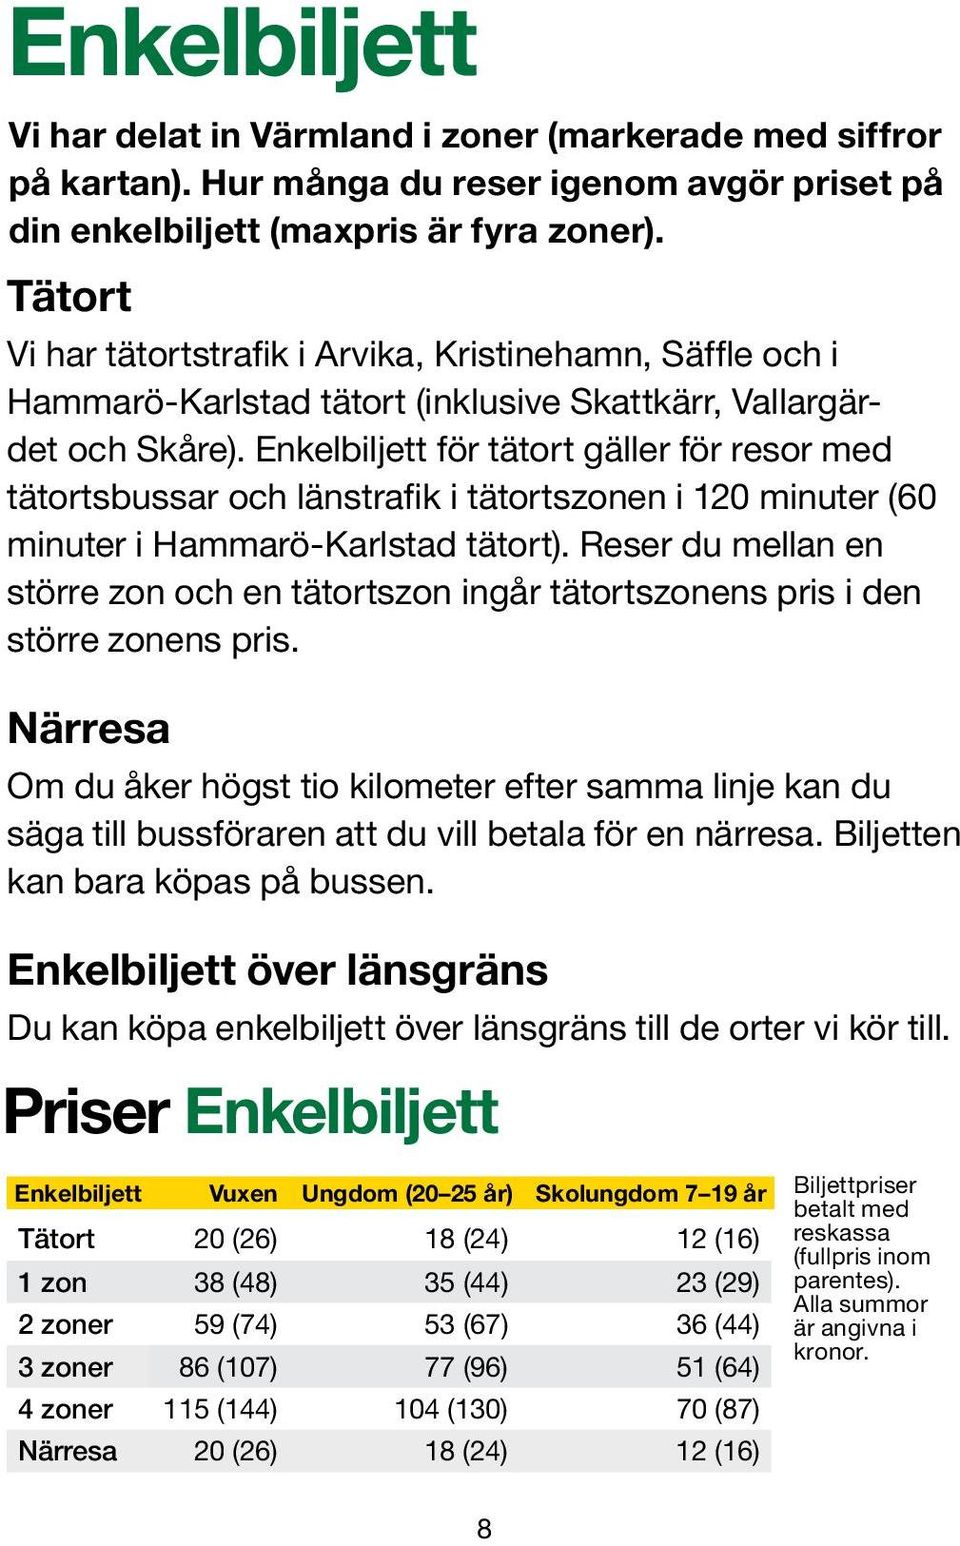 Enkelbiljett för tätort gäller för resor med tätortsbussar och länstrafik i tätortszonen i 120 minuter (60 minuter i Hammarö-Karlstad tätort).